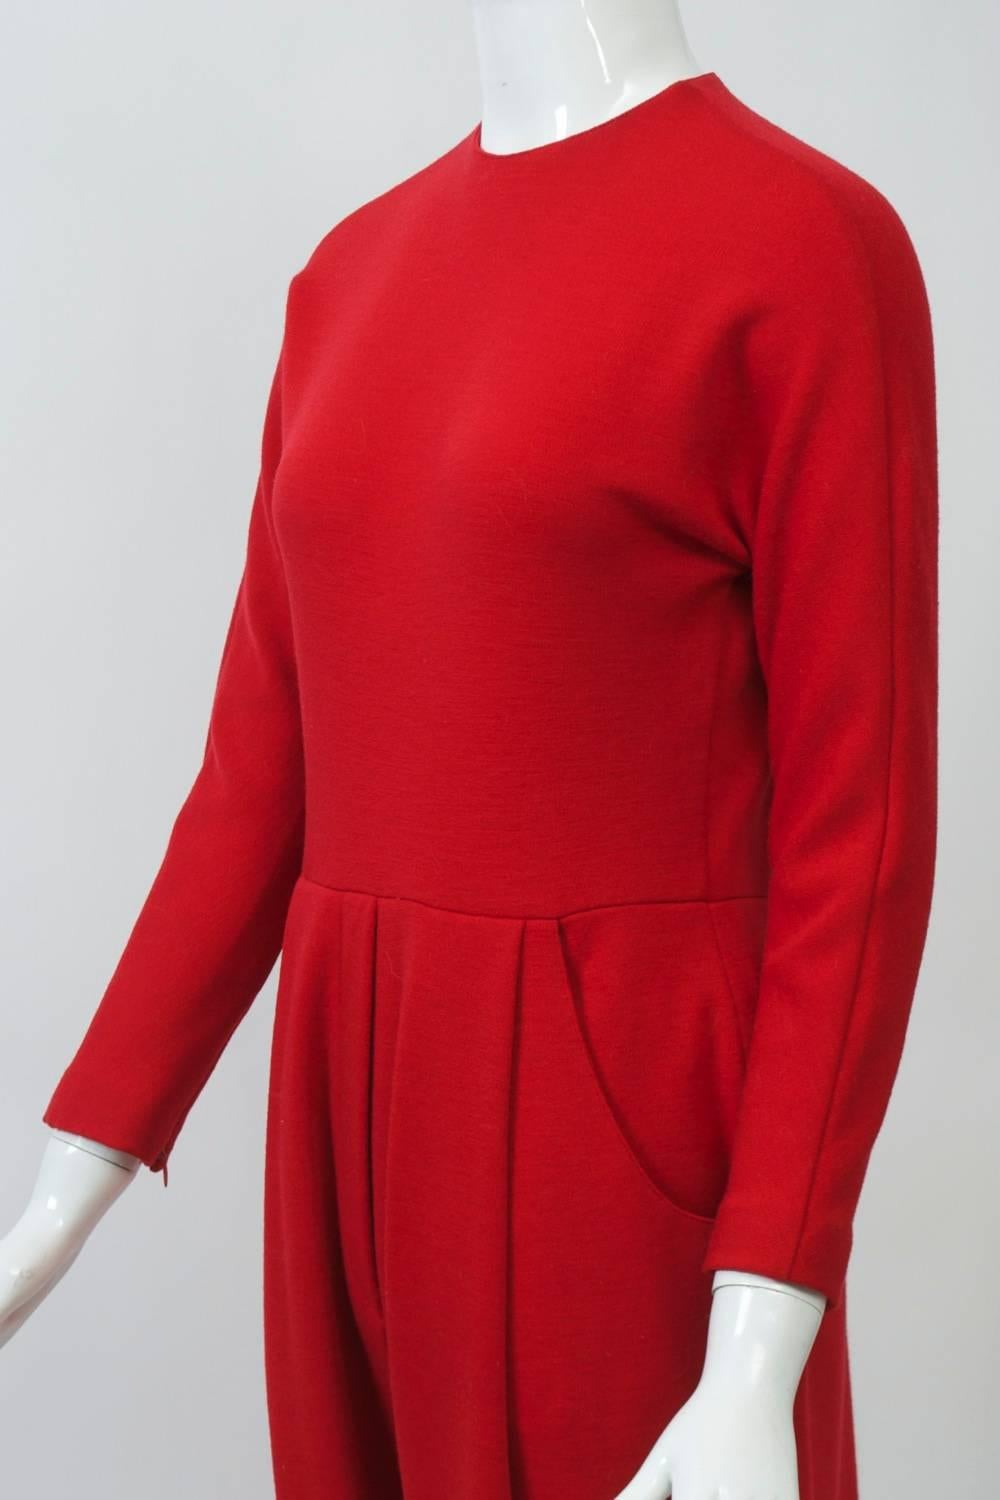 Women's Geoffrey Beene red Knit JumpSuit